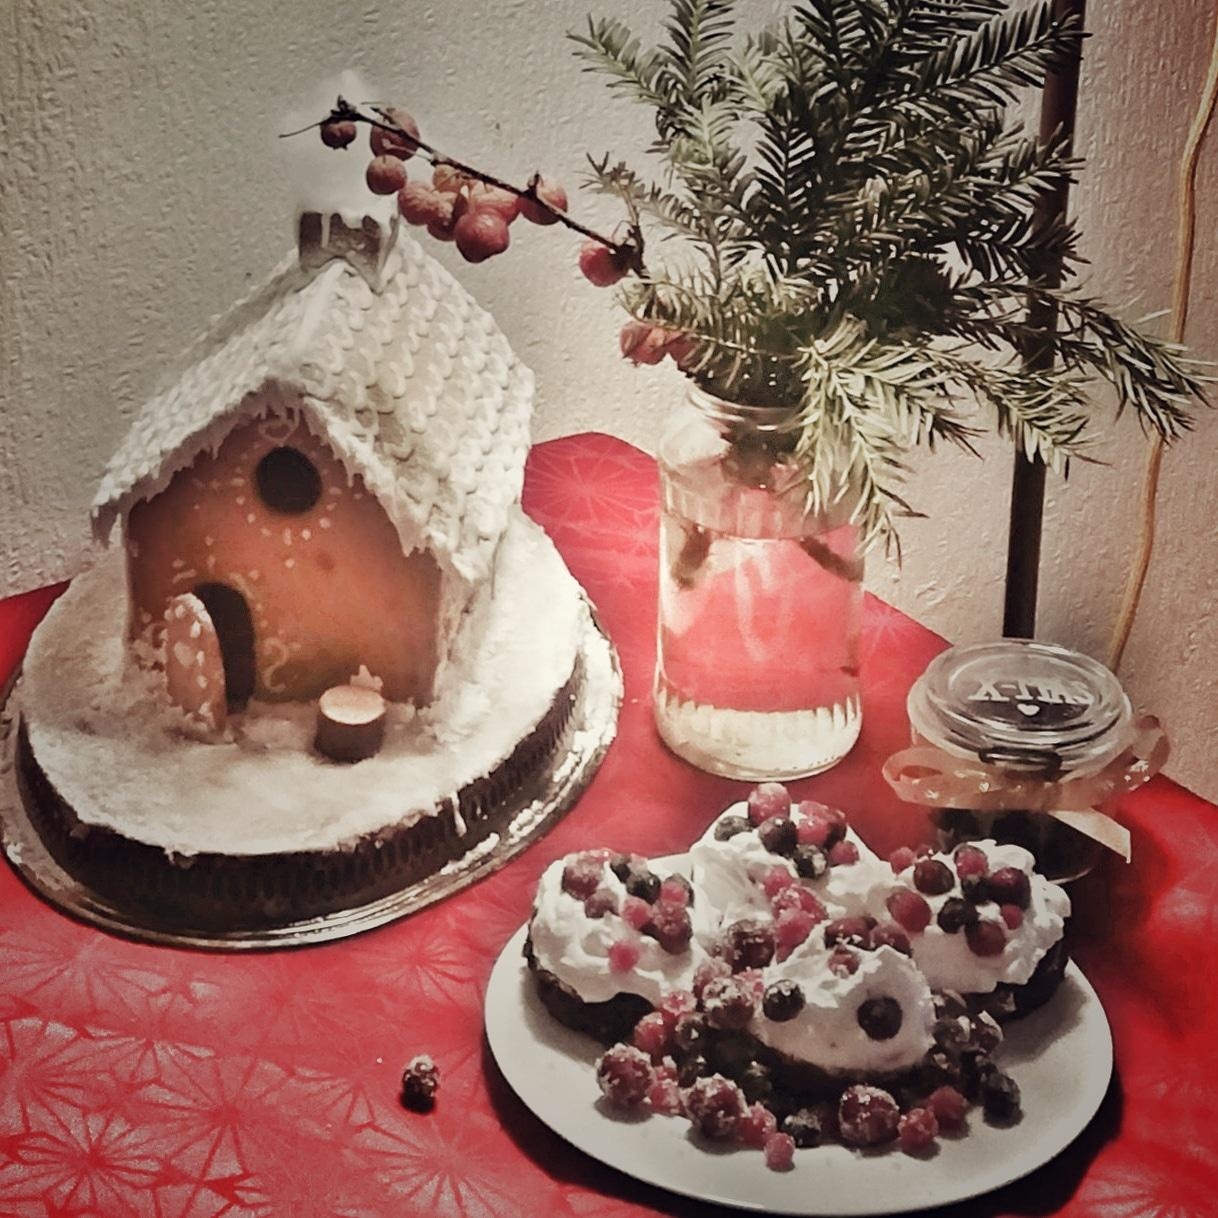 Meine Schwester ist die baking queen 👩‍❤️‍👩🤗😍

#weihnachten #baken #lebkuchenhaus #cupcakes #winter#hygge